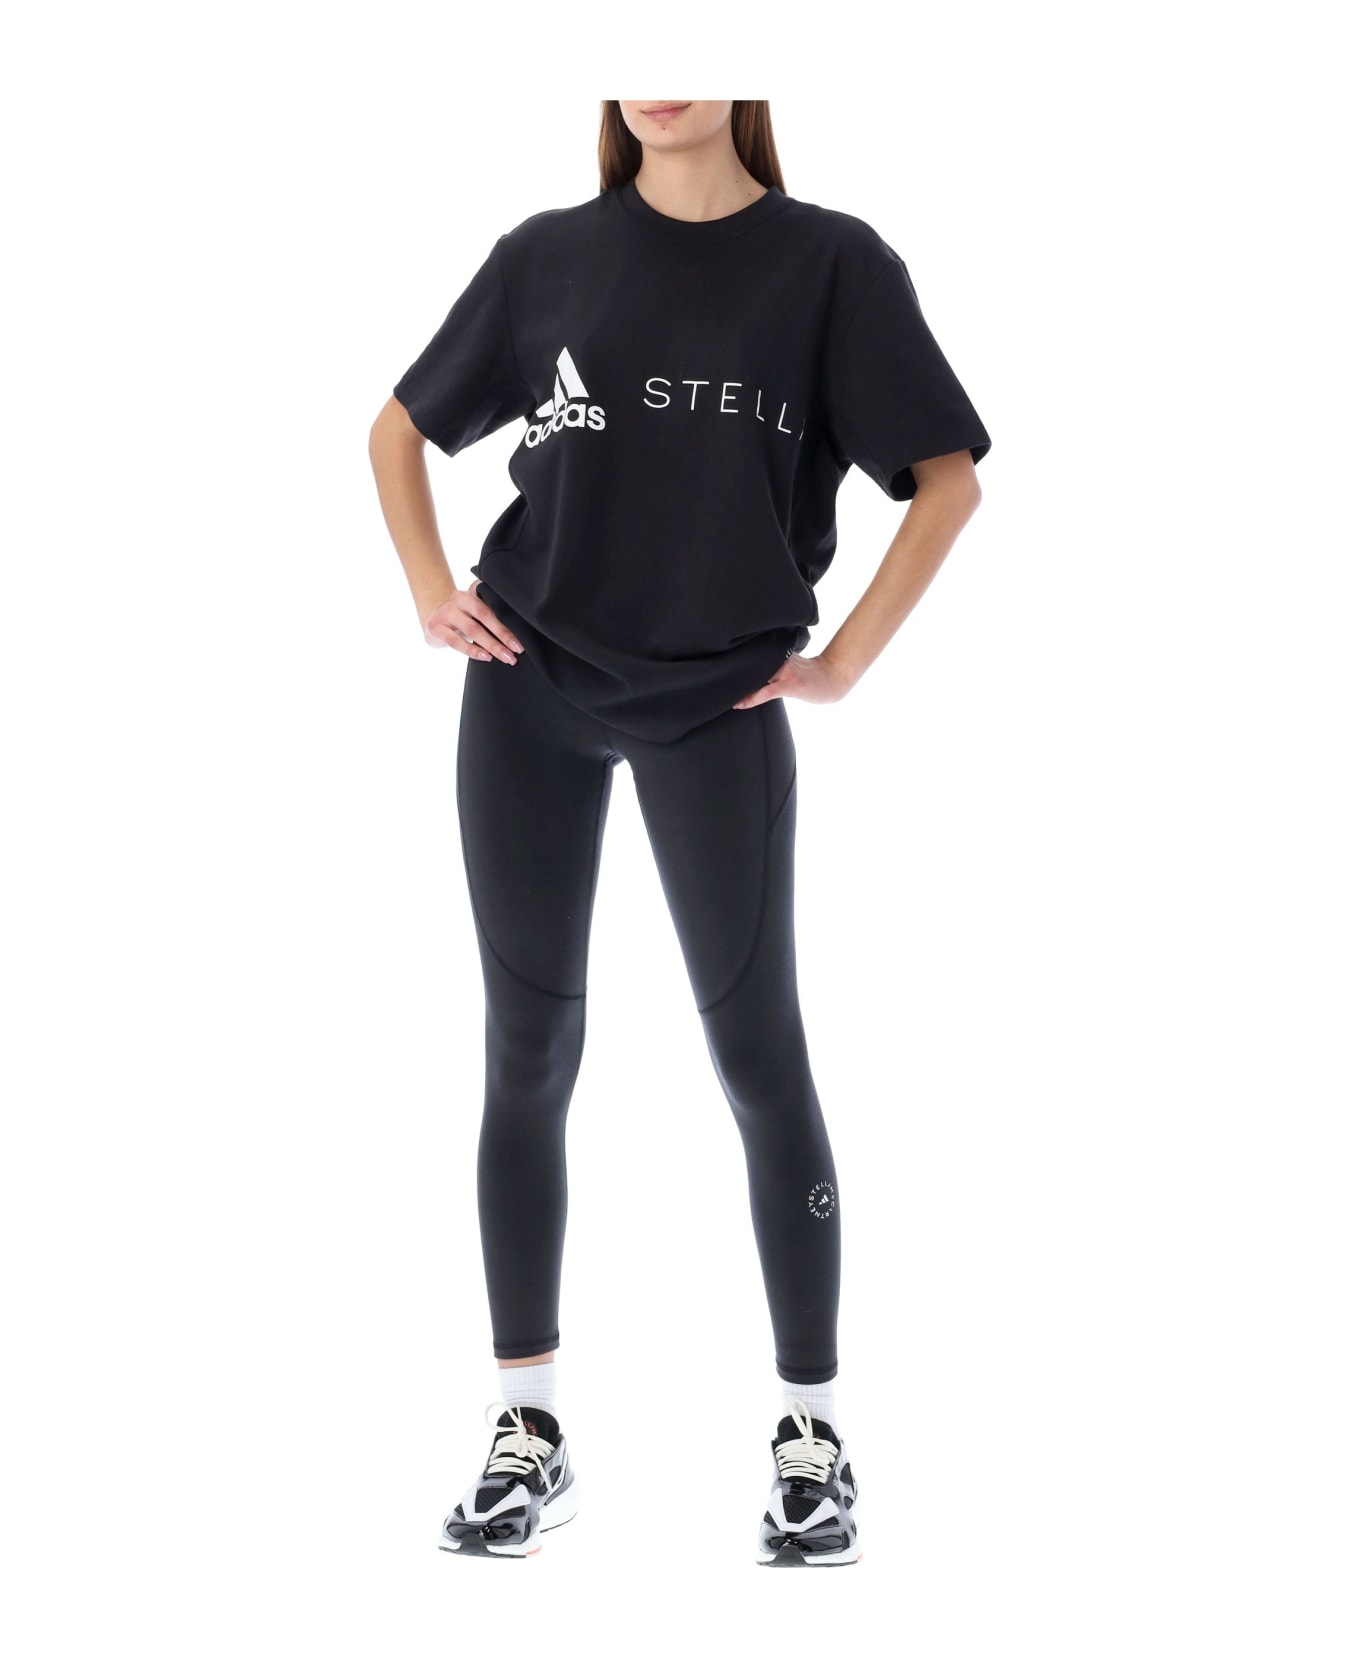 Adidas by Stella McCartney Logo Leggings - Black レギンス